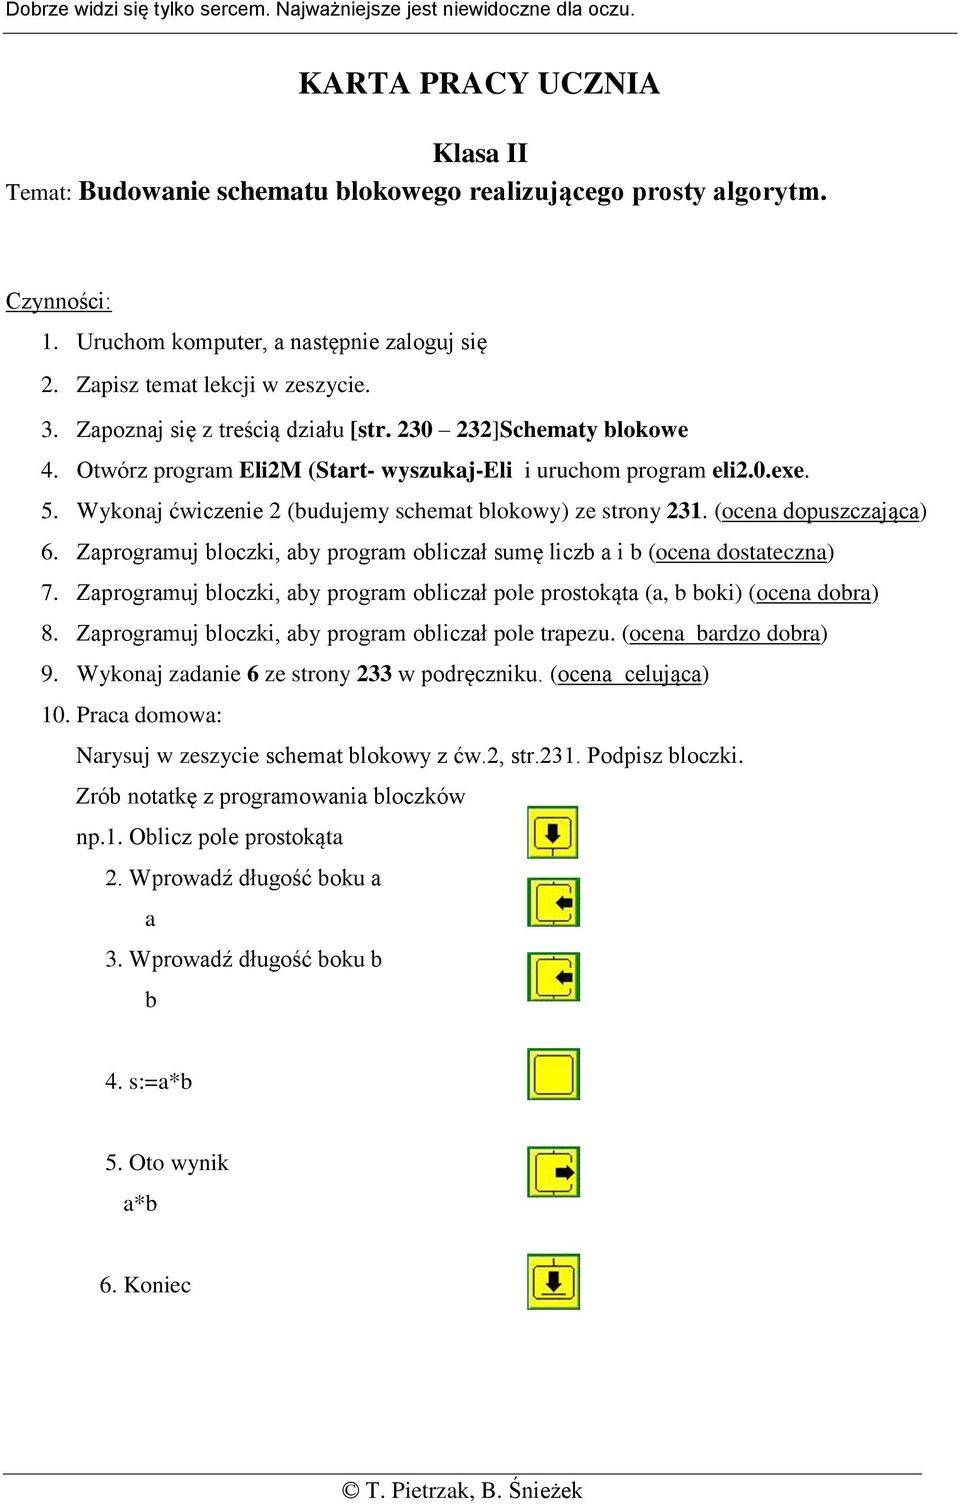 Otwórz program Eli2M (Start- wyszukaj-eli i uruchom program eli2.0.exe. 5. Wykonaj ćwiczenie 2 (budujemy schemat blokowy) ze strony 231. (ocena dopuszczająca) 6.